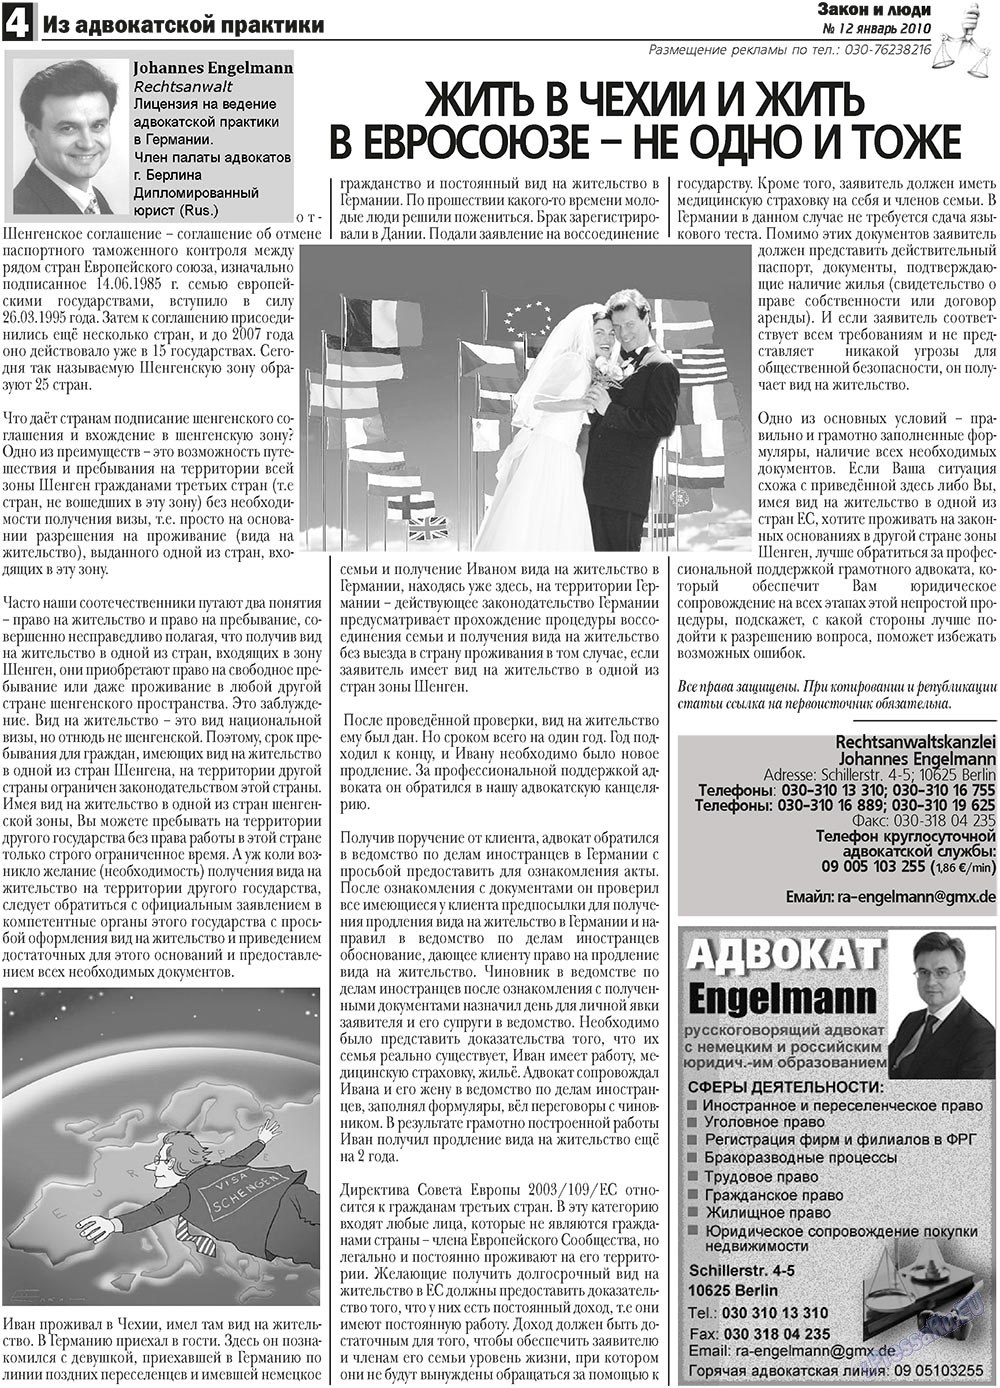 Закон и люди, газета. 2011 №1 стр.4